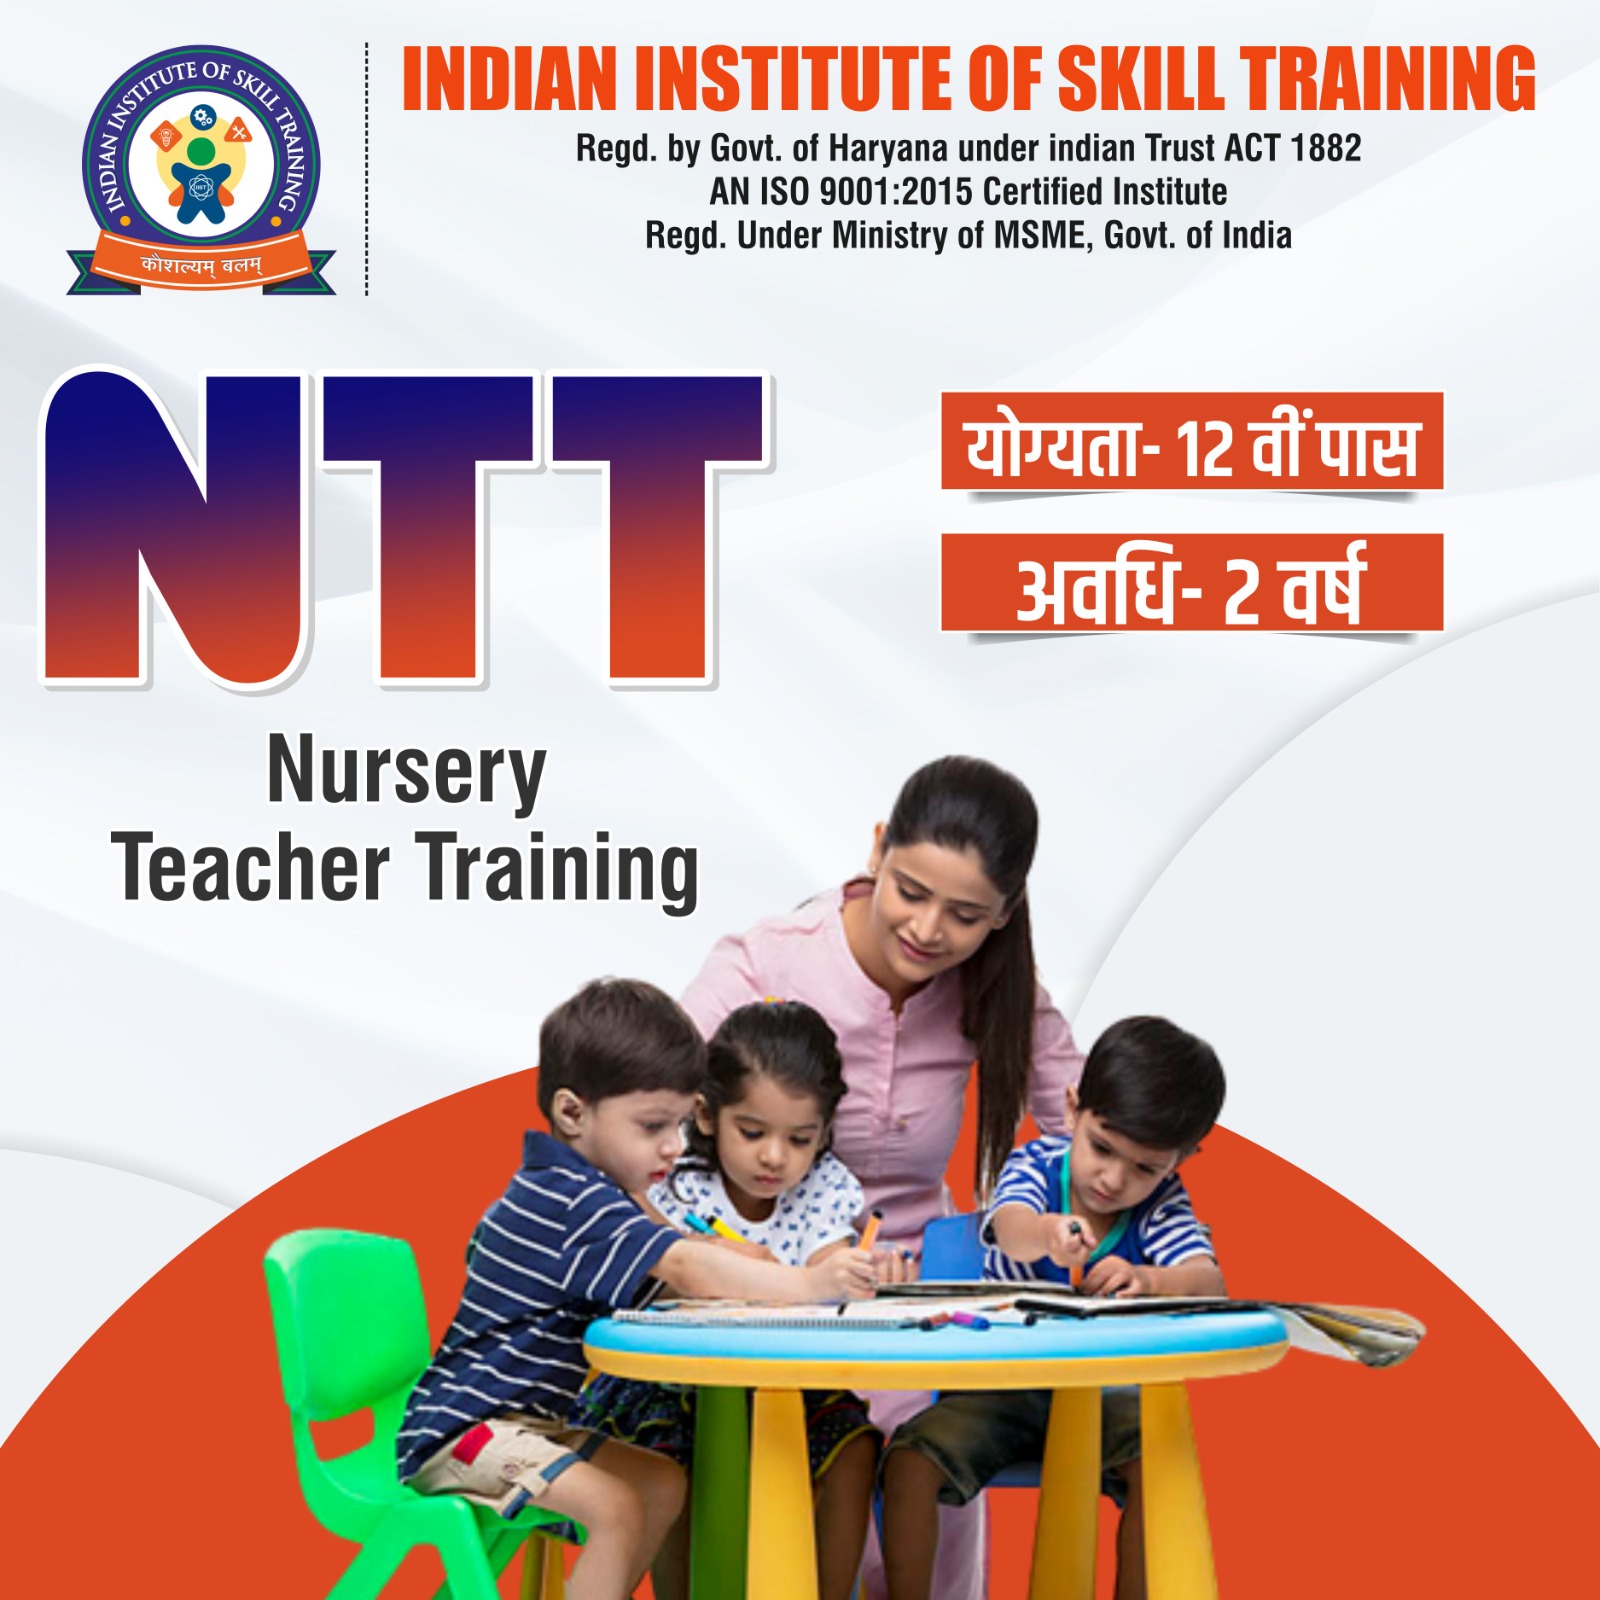 Indian Institute of Skill Training